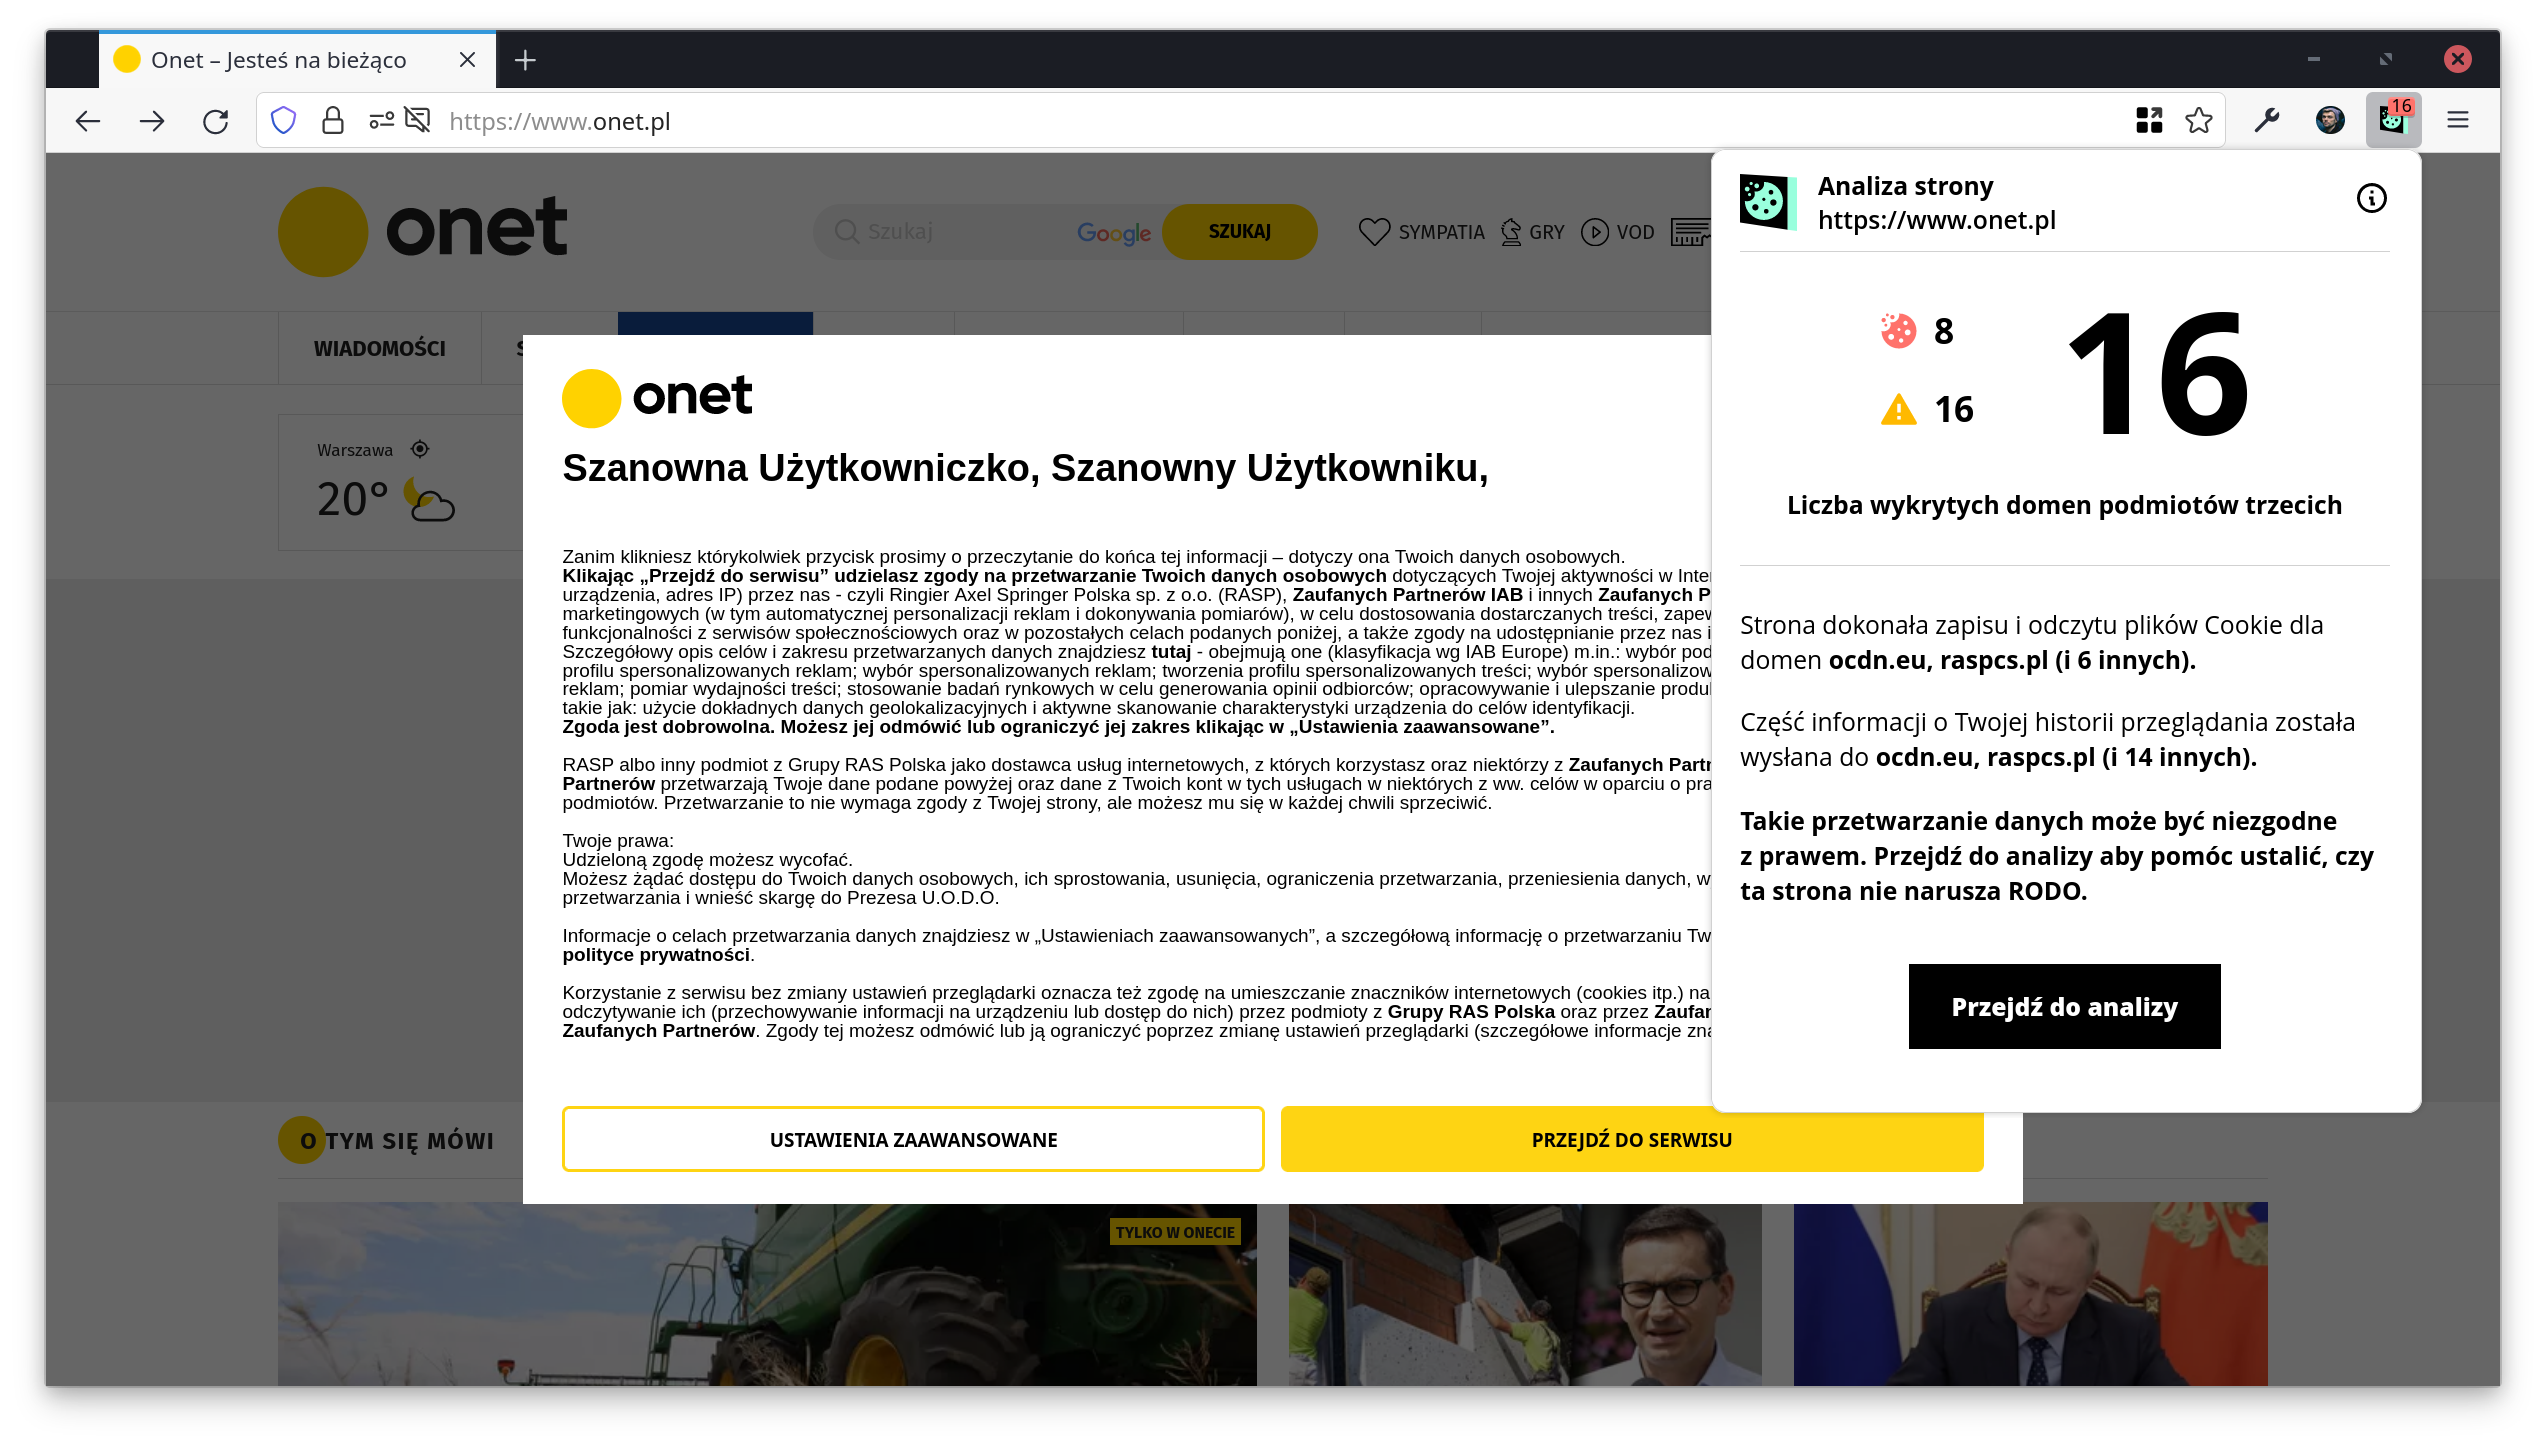 Interfejs wtyczki Rentgen, który informuje nas o problemach na stronie Onet.pl